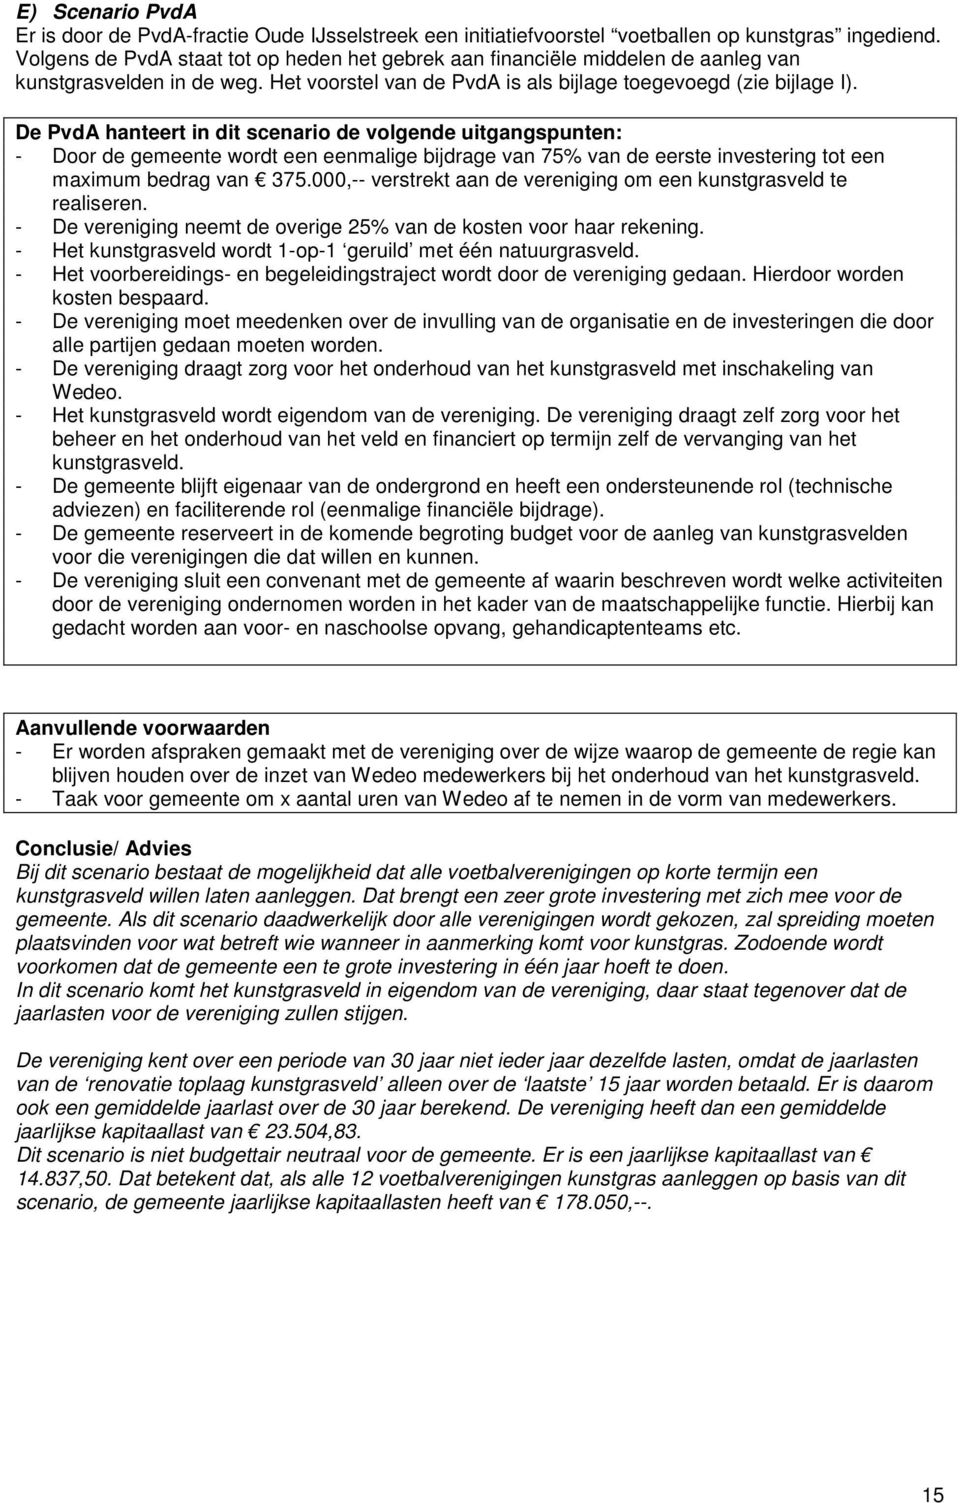 De PvdA hanteert in dit scenario de volgende uitgangspunten: - Door de gemeente wordt een eenmalige bijdrage van 75% van de eerste investering tot een maximum bedrag van 375.